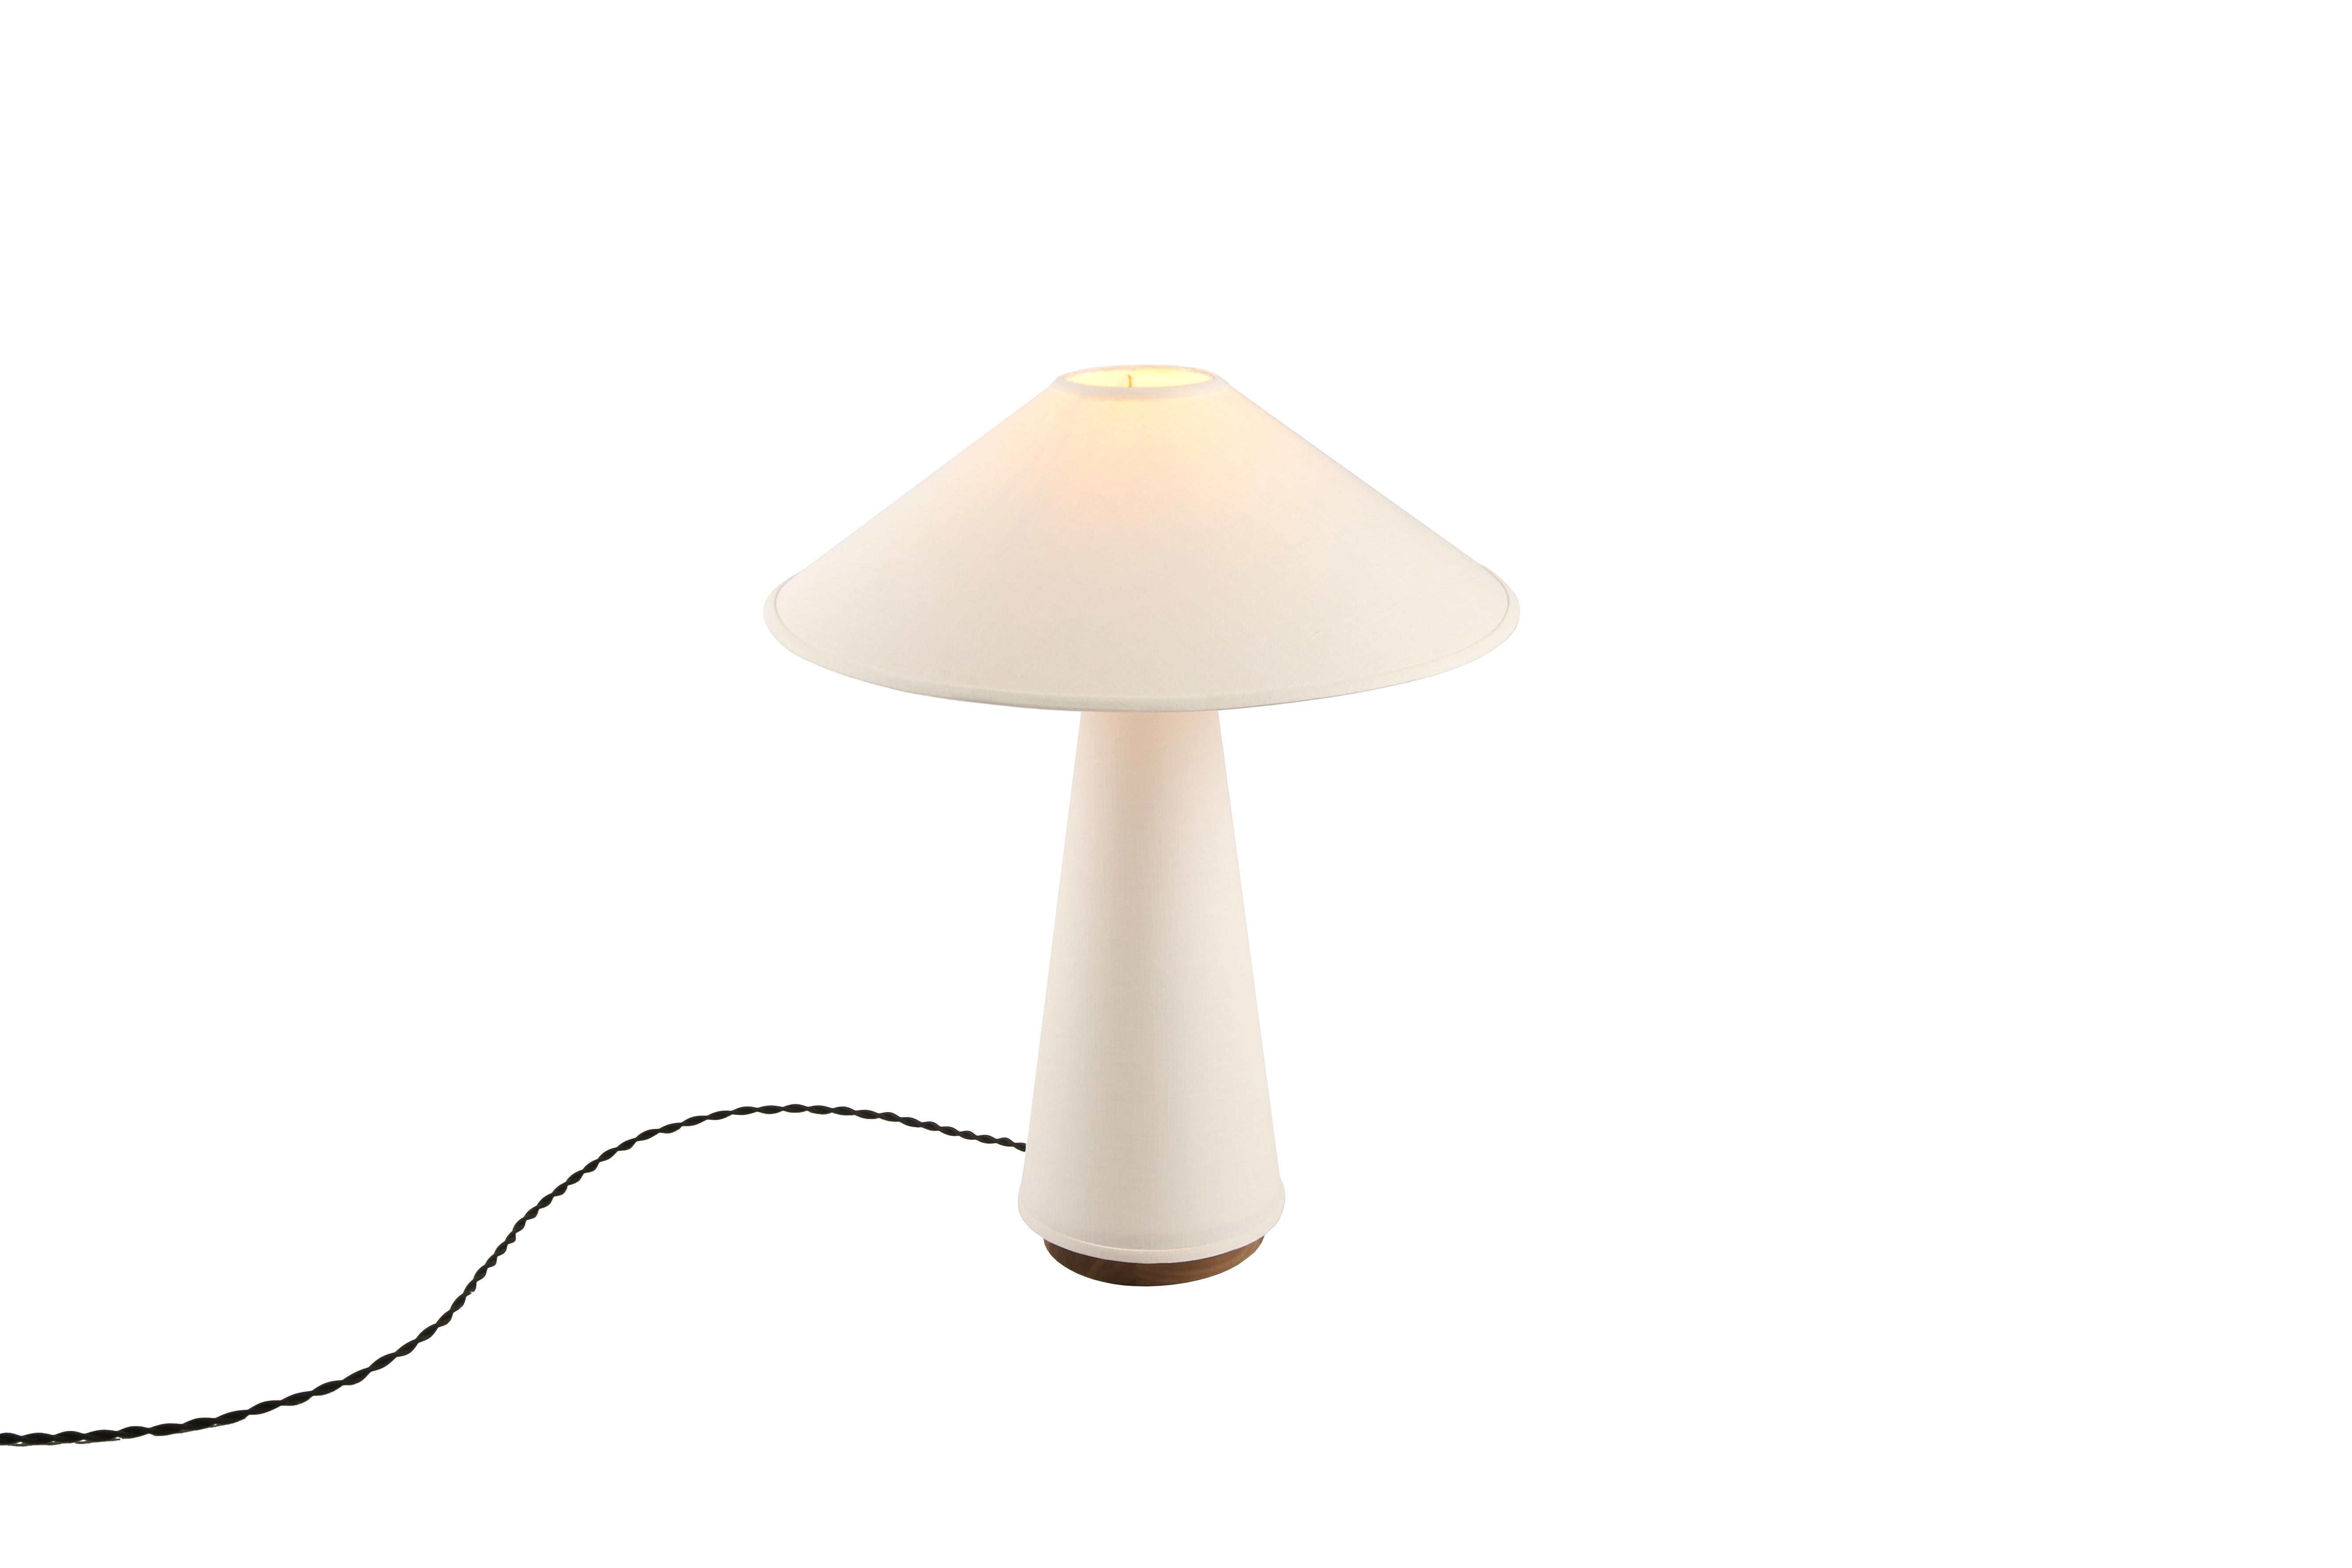 La lampe de table Linden présente un abat-jour et un corps de lampe en lin crème, une base en bois dur massif de noyer et des détails en laiton. Étude de la dualité, cette pièce explore l'équilibre entre un tissu souple et fluide et des formes